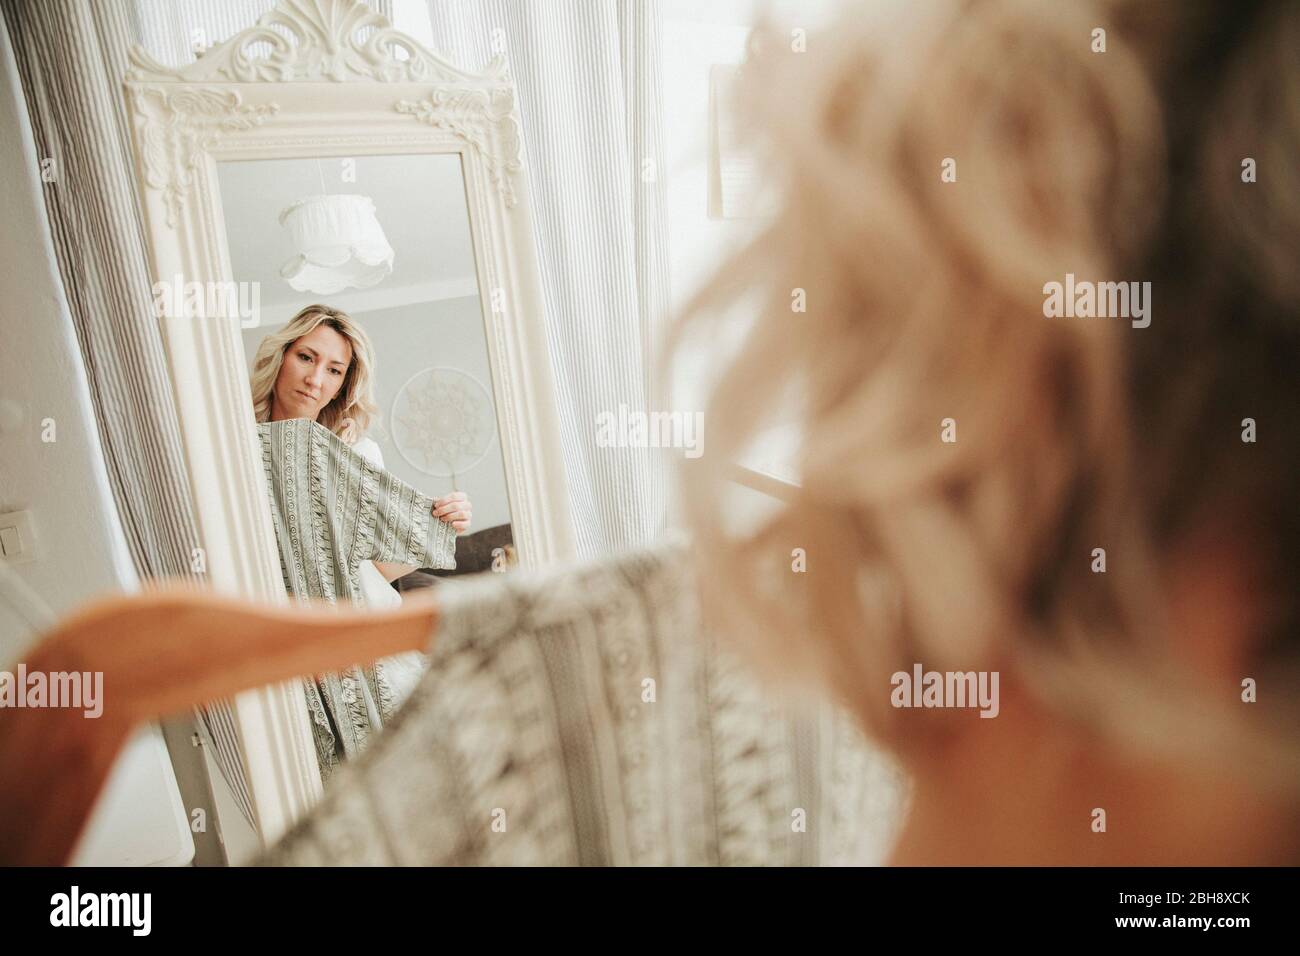 Frau steht vor dem Spiegel, kleidet sich an, unentschlossen Foto Stock